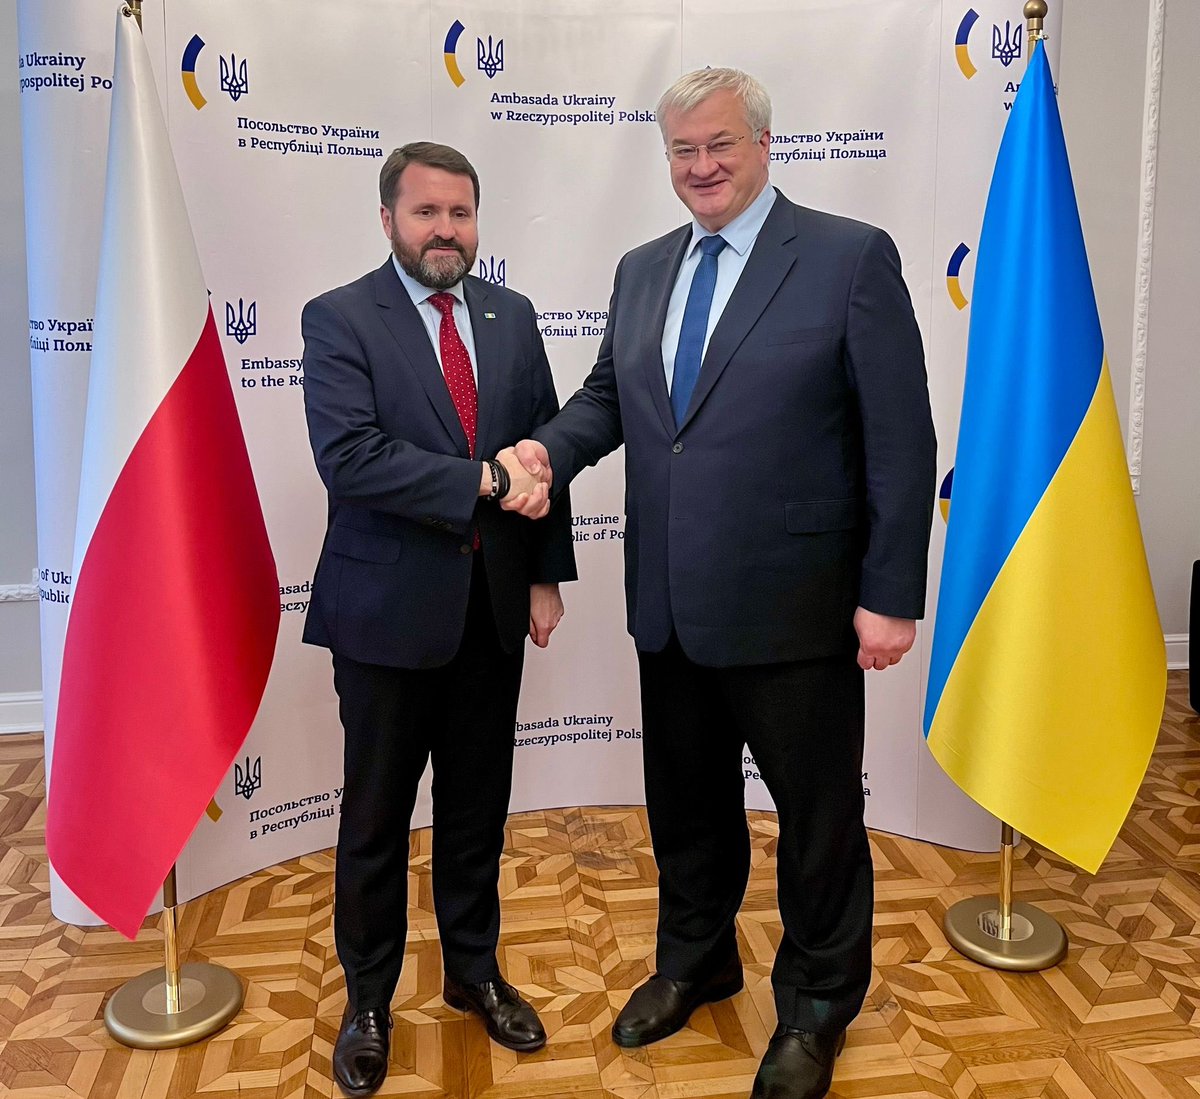 Mialem dobre merytoryczne spotkanie z podsekretarzem stanu @MSZ_RP @RKupiecki. Poruszyliśmy ważne tematy związane z przeciwdziałaniem agresji rosyjskiej i wzmocnieniem współpracy na rzecz militarnego wsparcia Ukrainy. Bezpieczeństwo 🇺🇦 to także bezpieczeństwo 🇵🇱 i całej Europy.